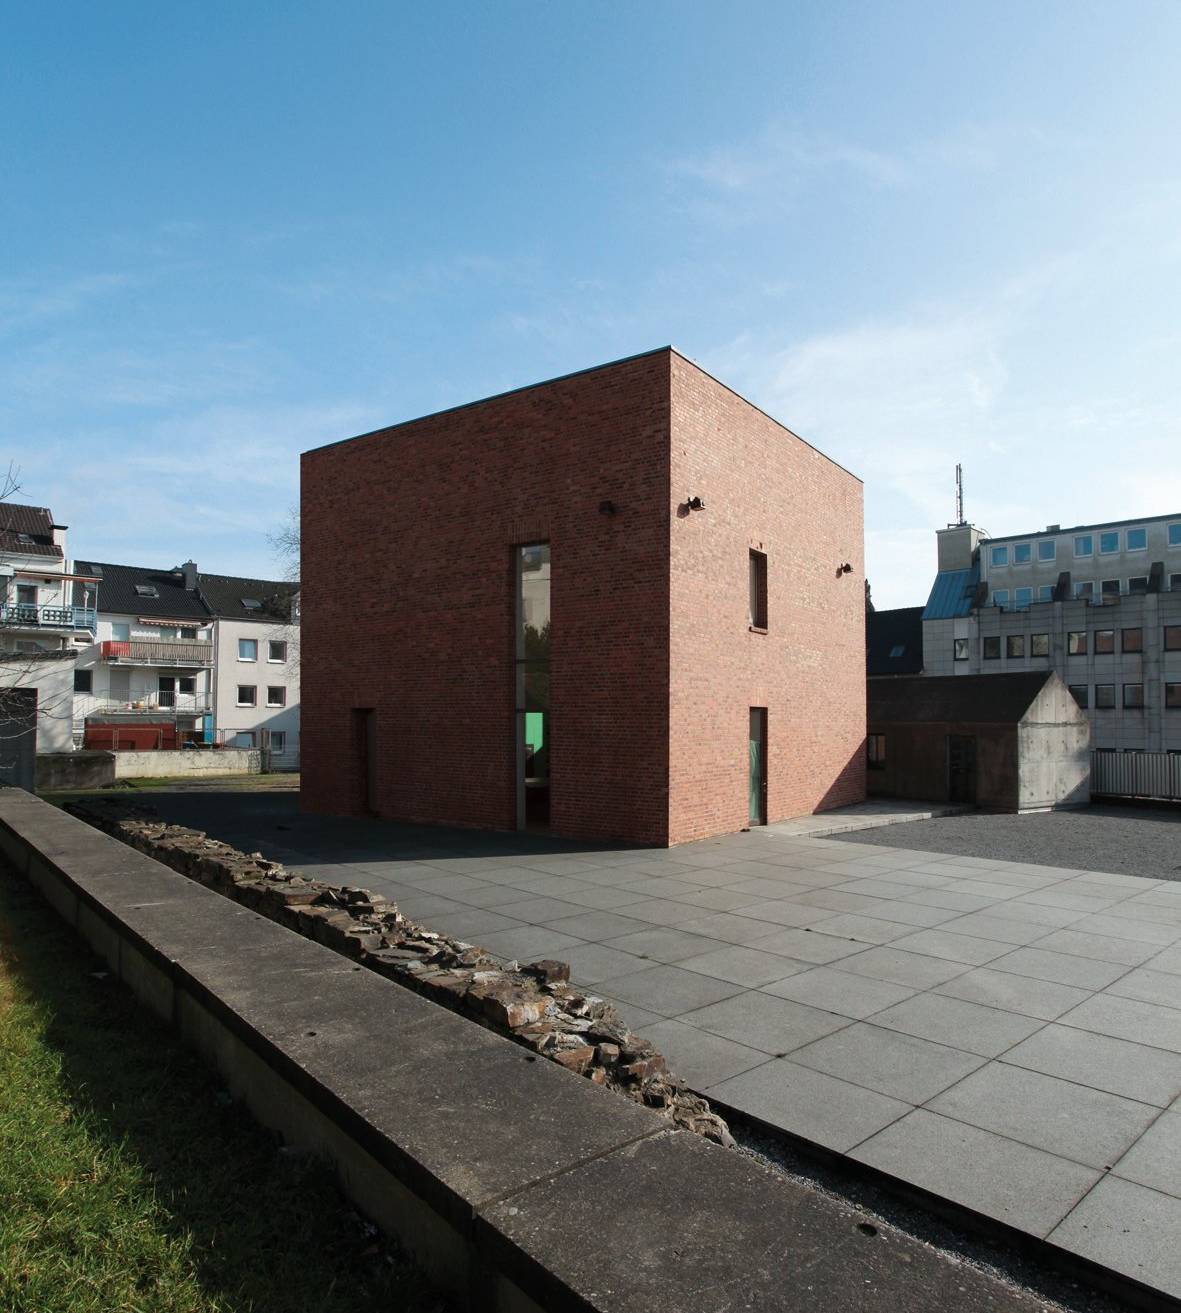  Die Begegnungsstätte Alte Synagoge Wuppertal ist eine Gedenkstätte für die Opfer des Nationalsozialismus und ein jüdisches Museum. 